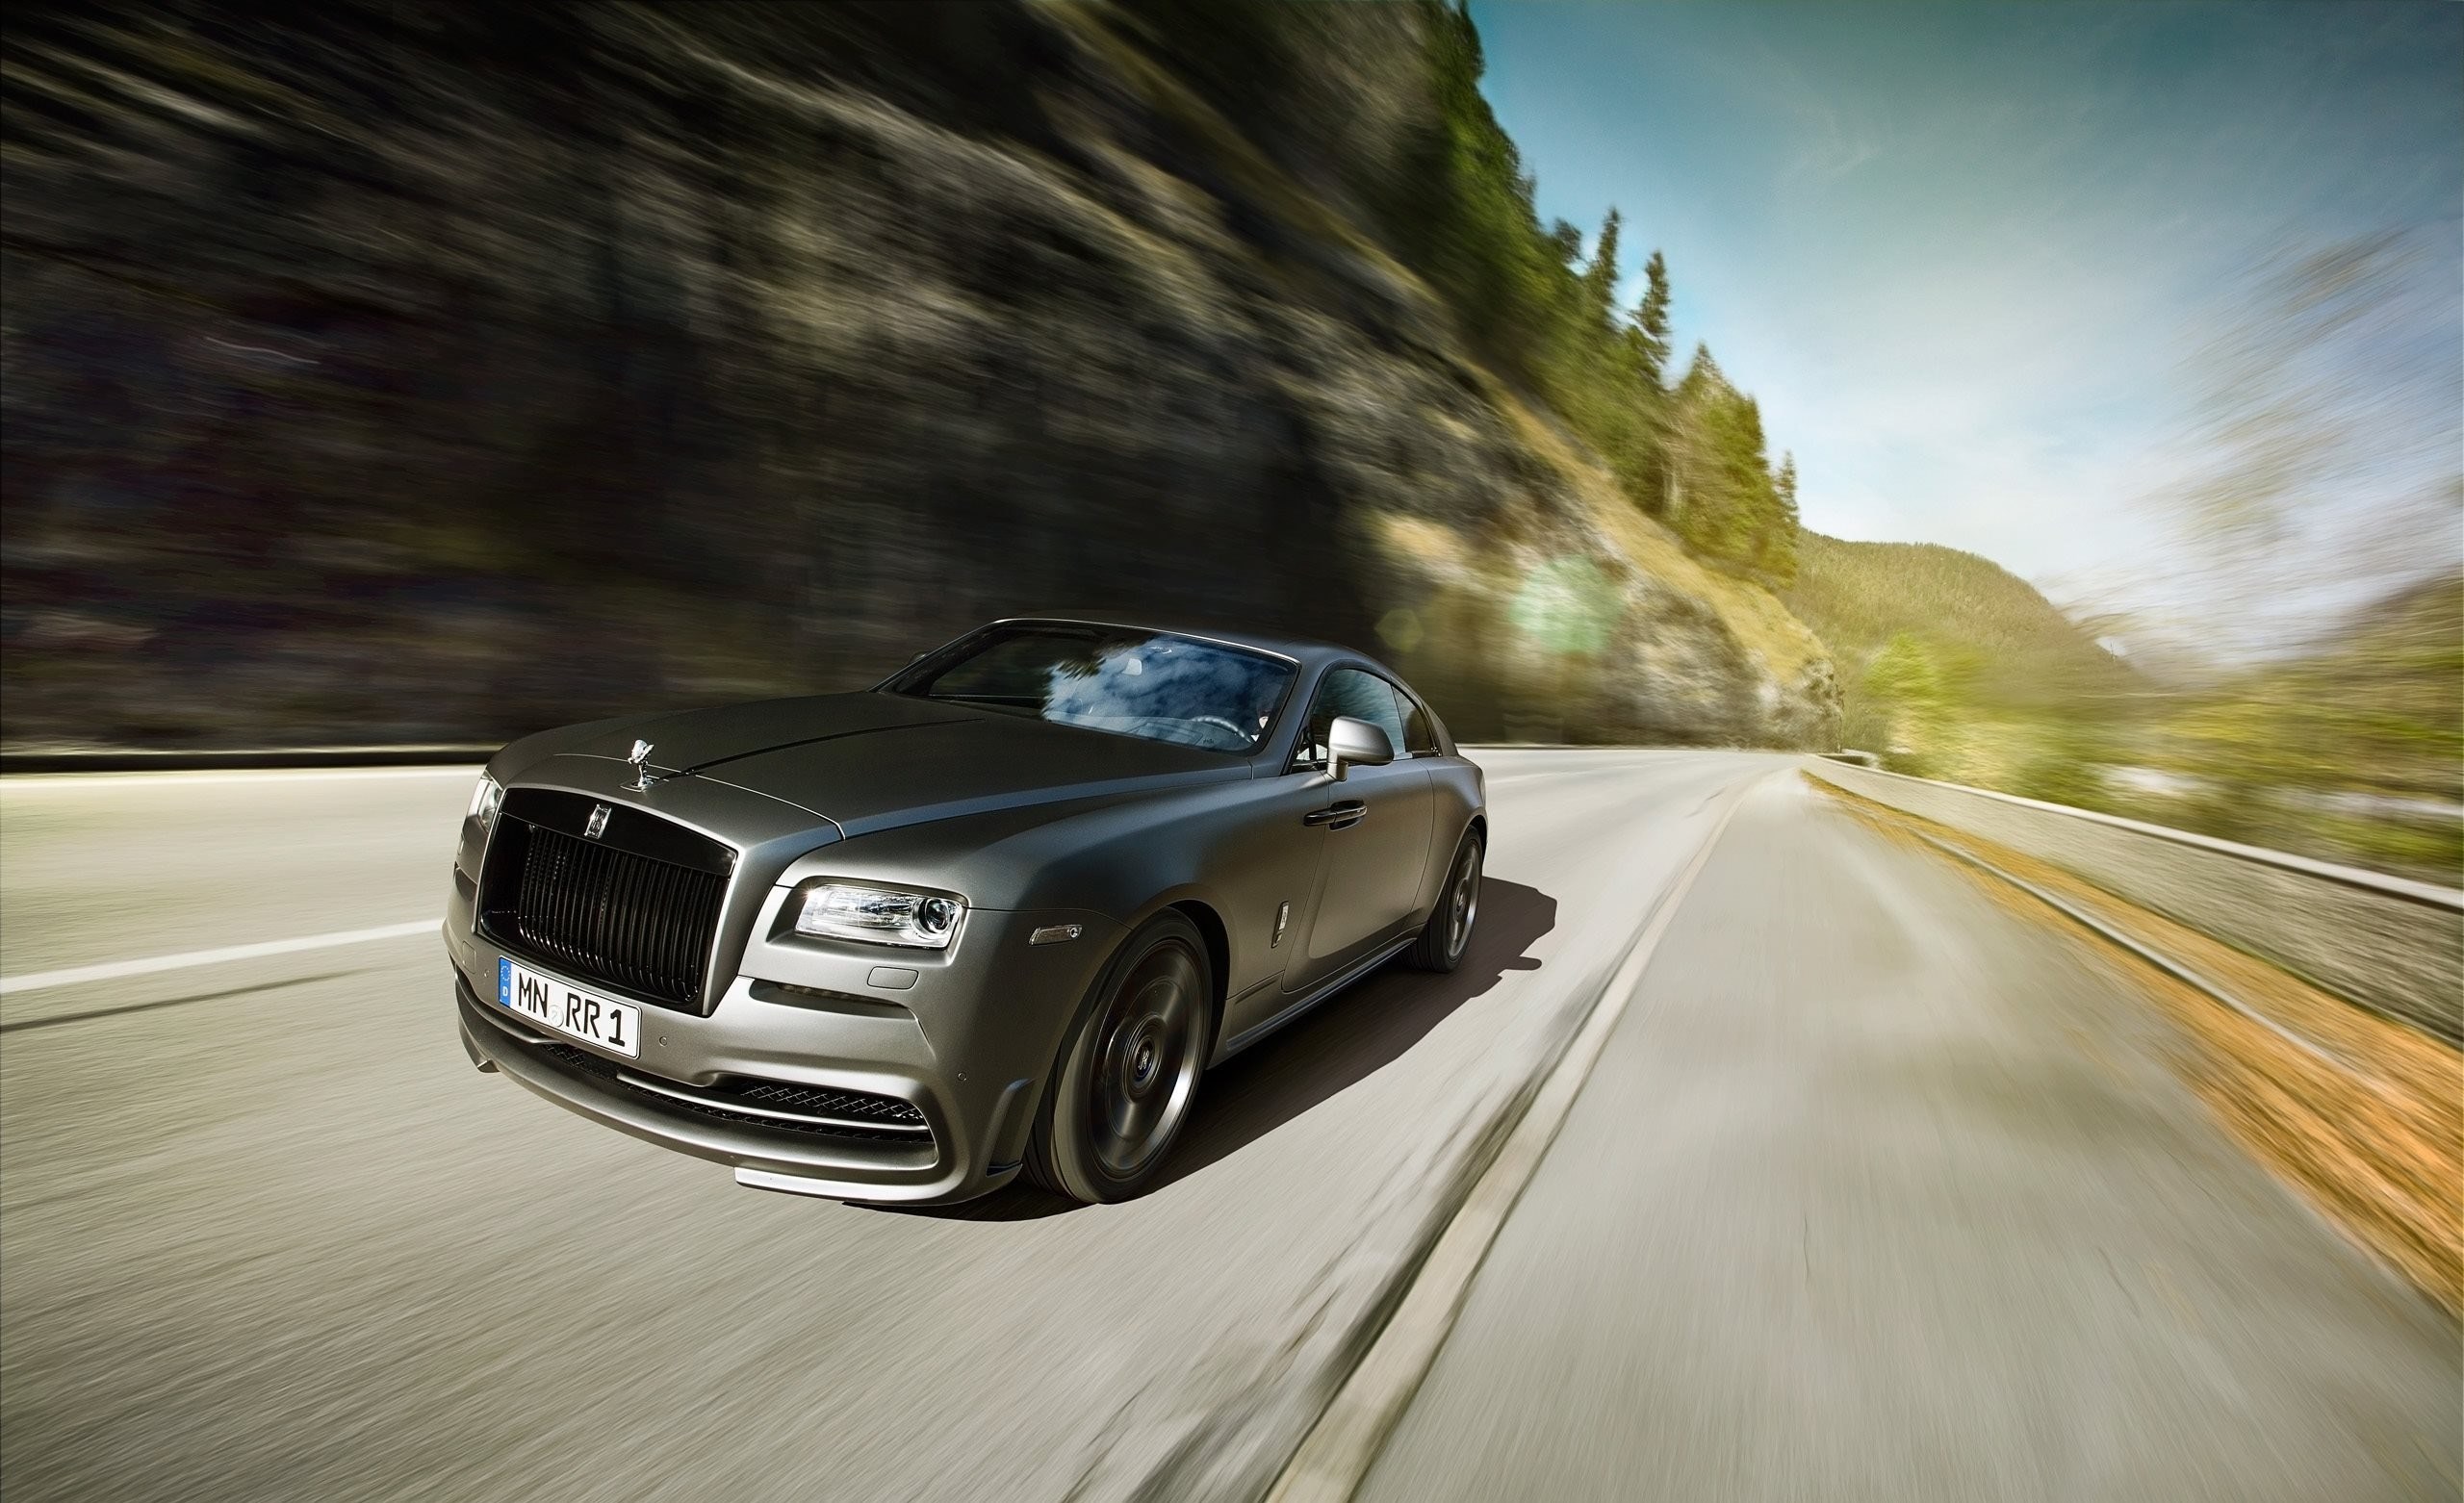 Rolls Royce Wraith серого цвета едет по загородной дороге